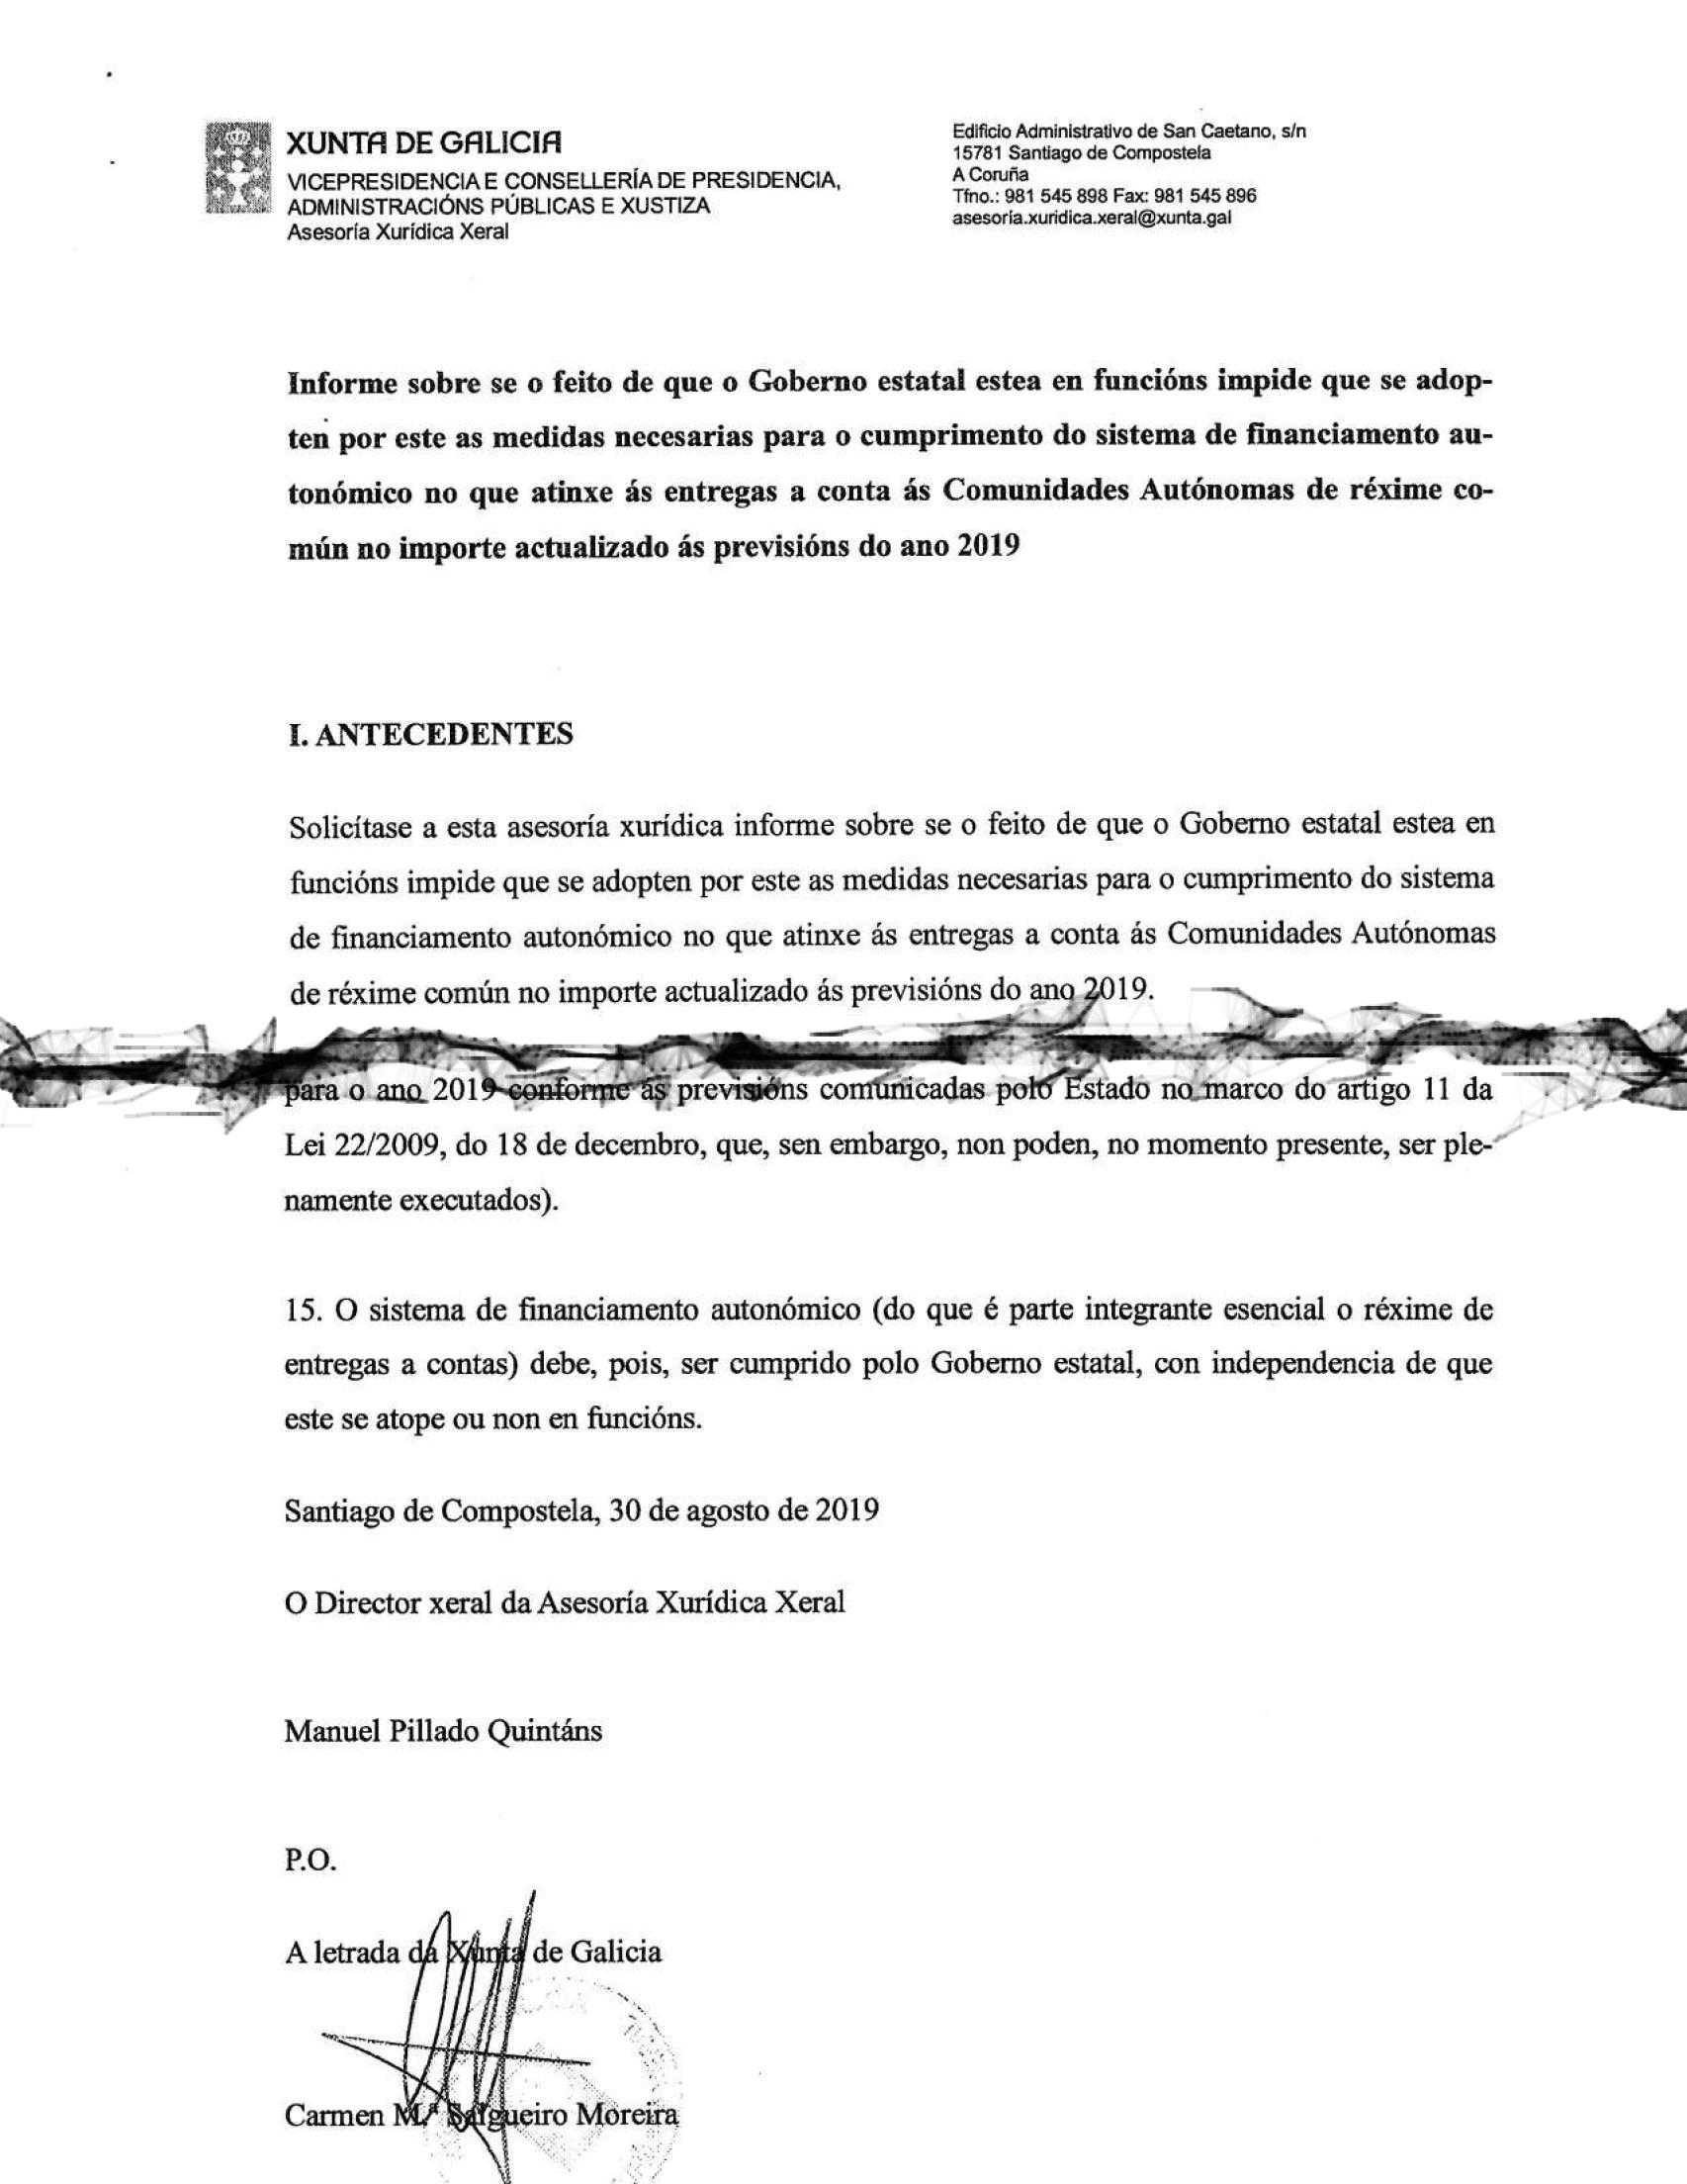 Detalles de la primera y última páginas del Informe de la Xunta.